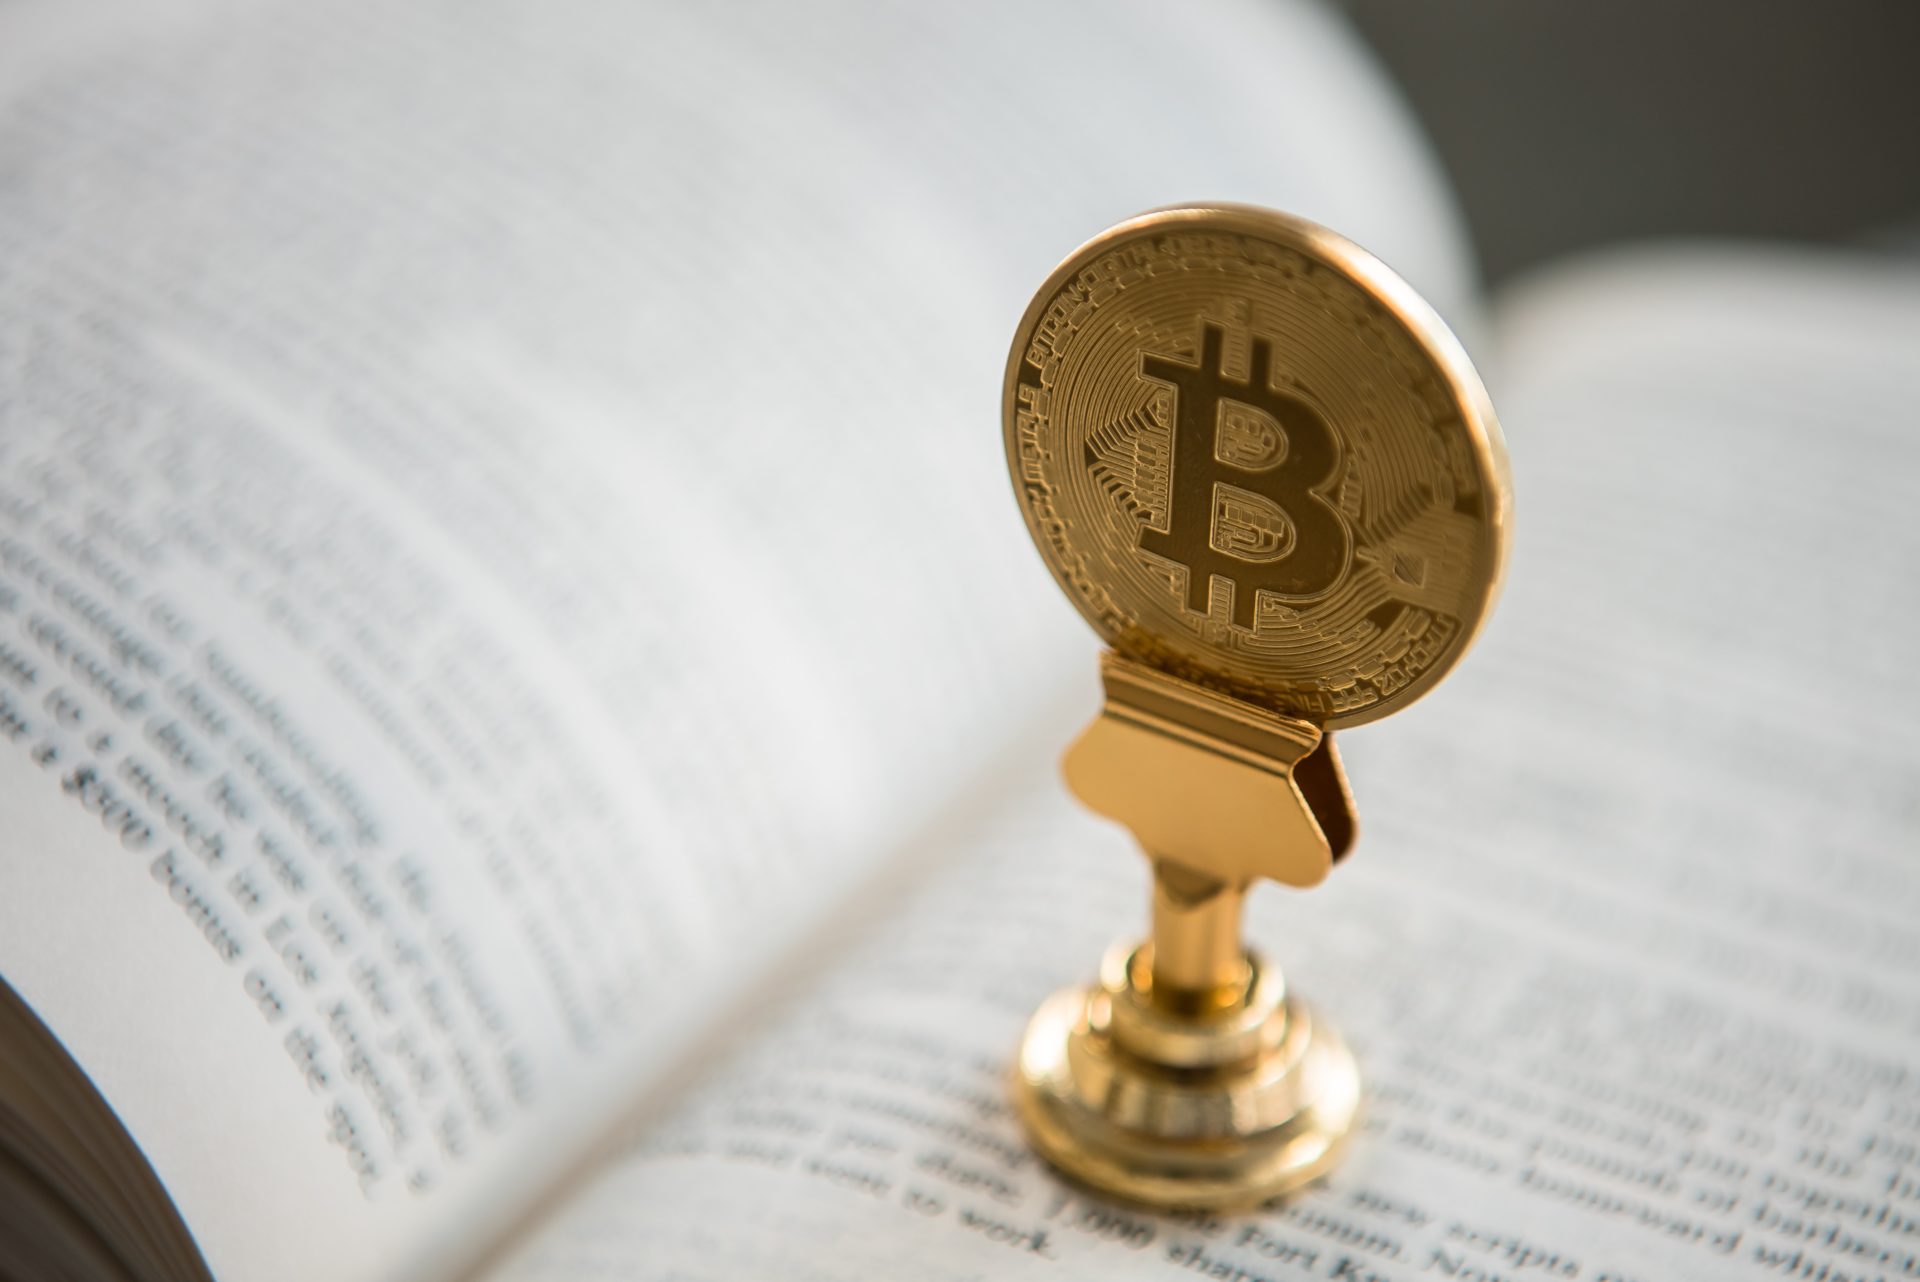  market crypto hits 500 bitcoin shifts sentiment 